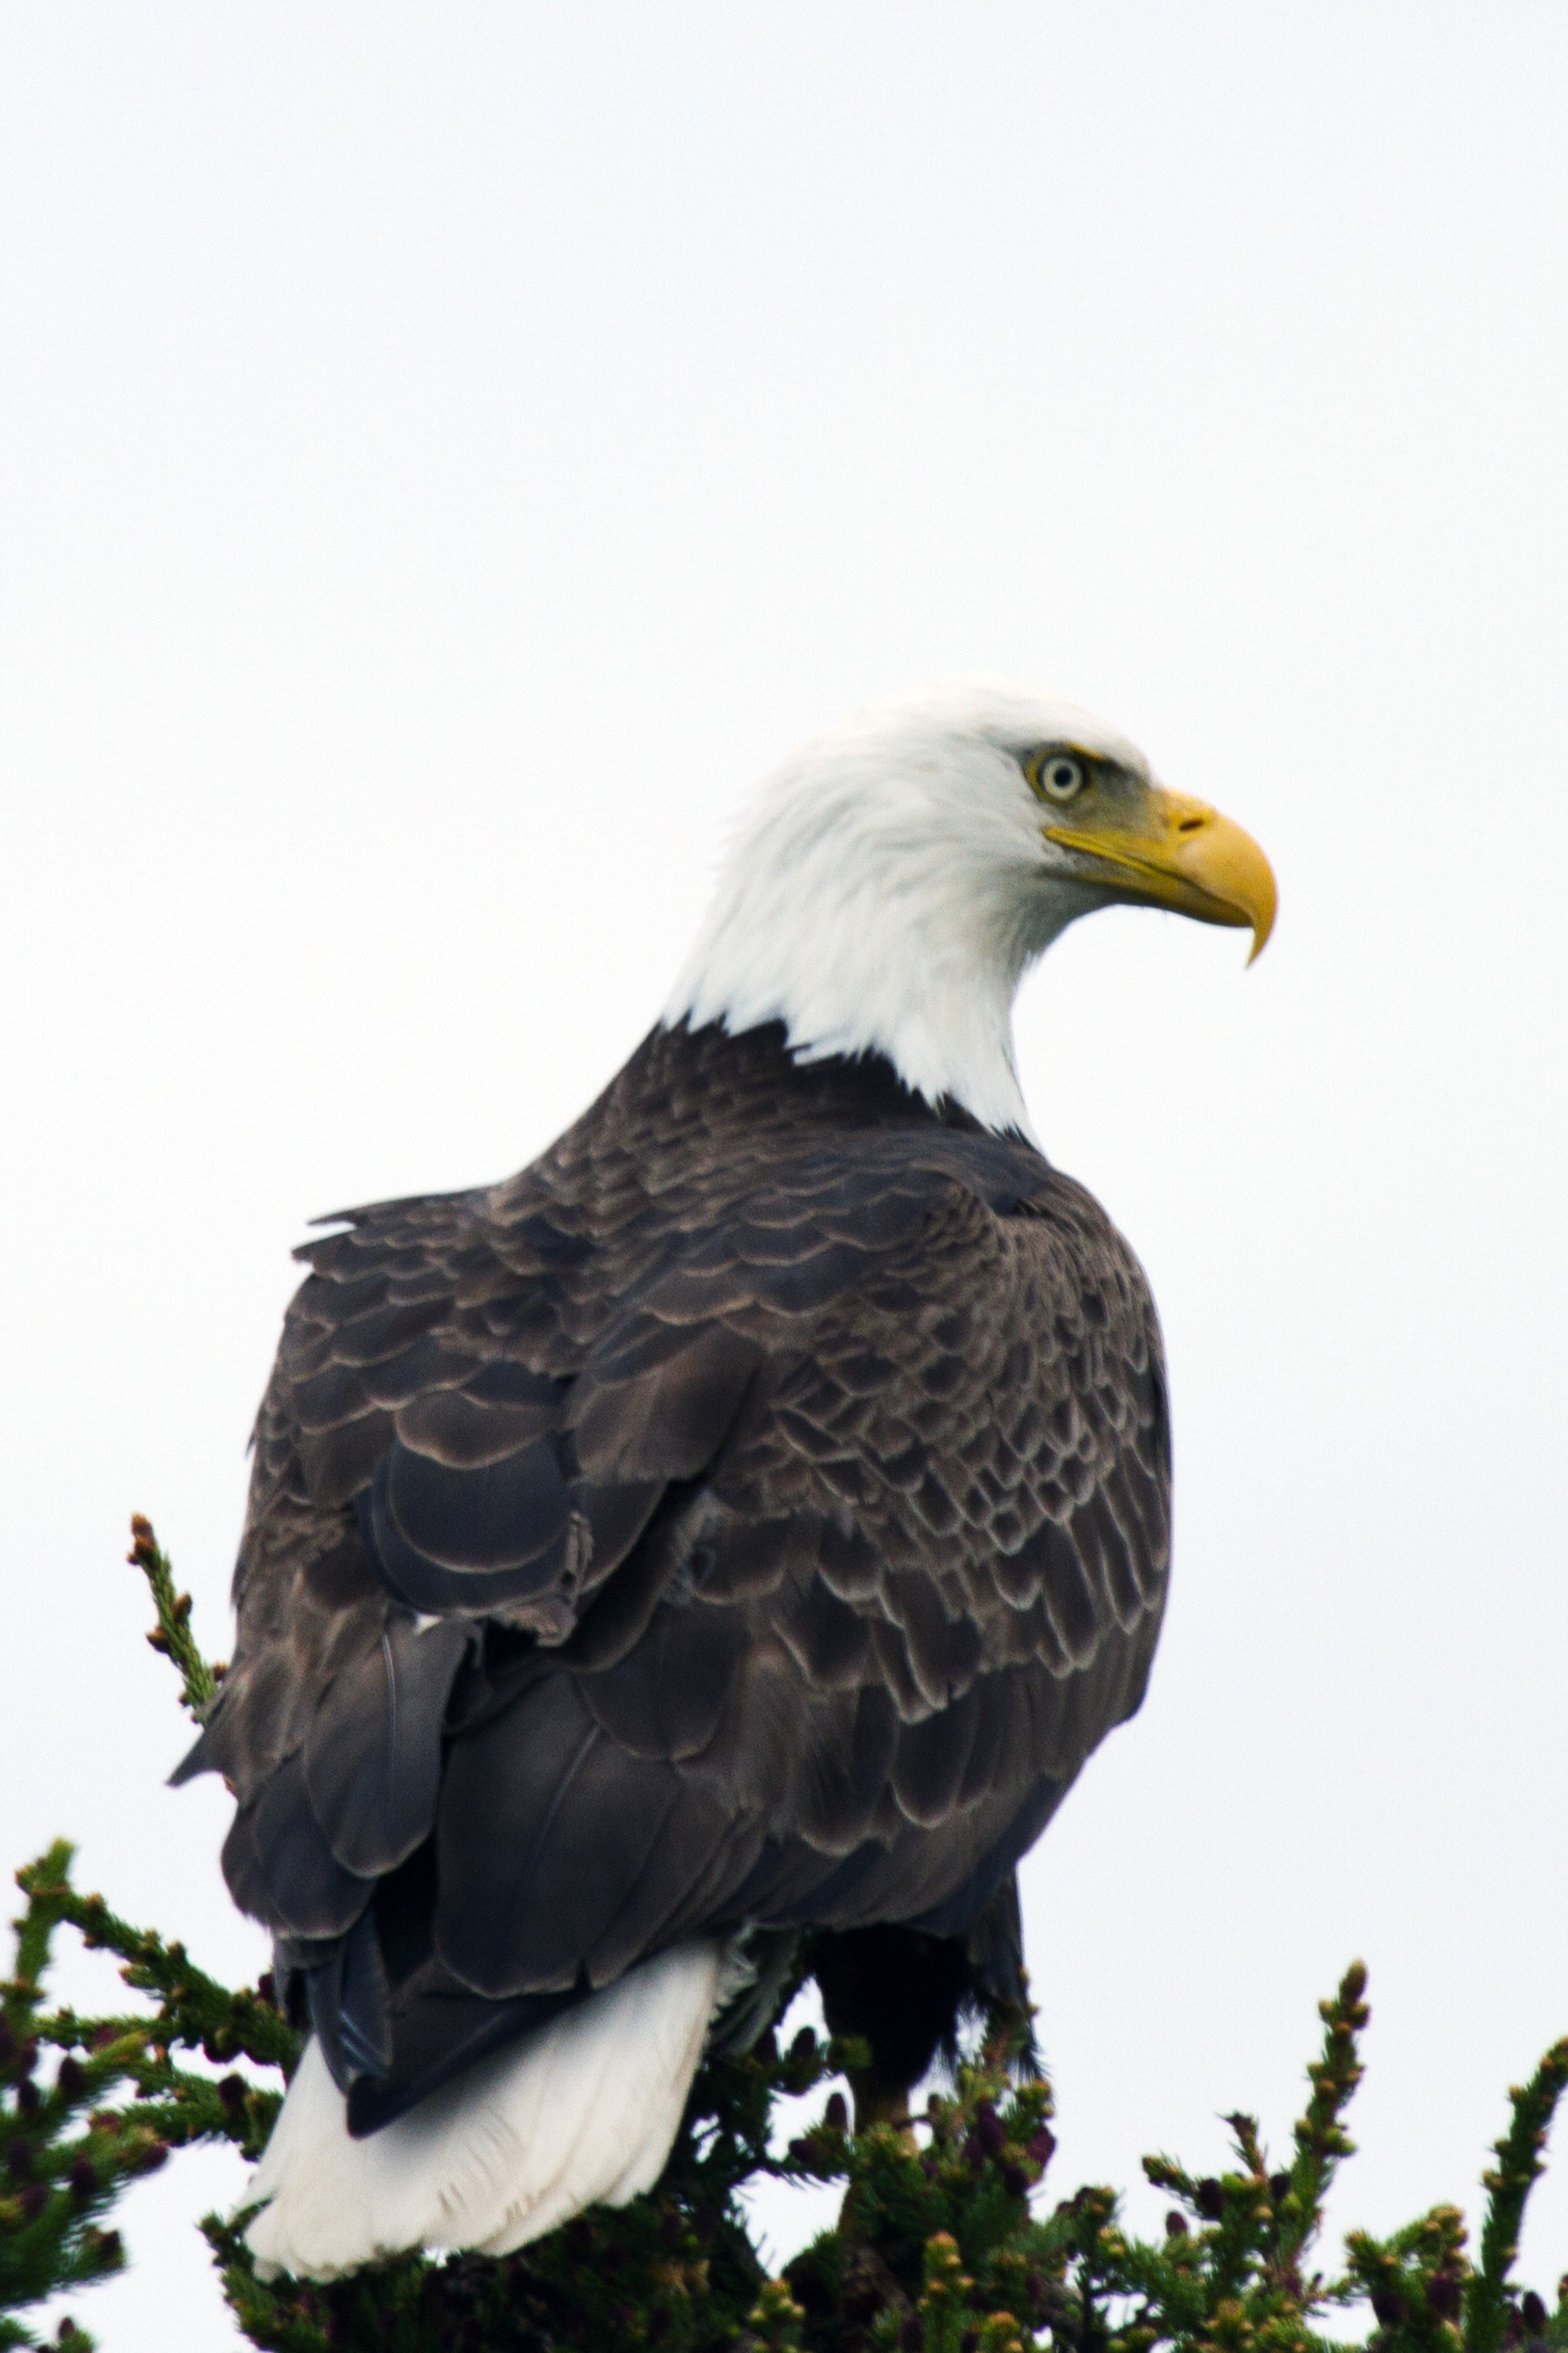 American bald eagle photo